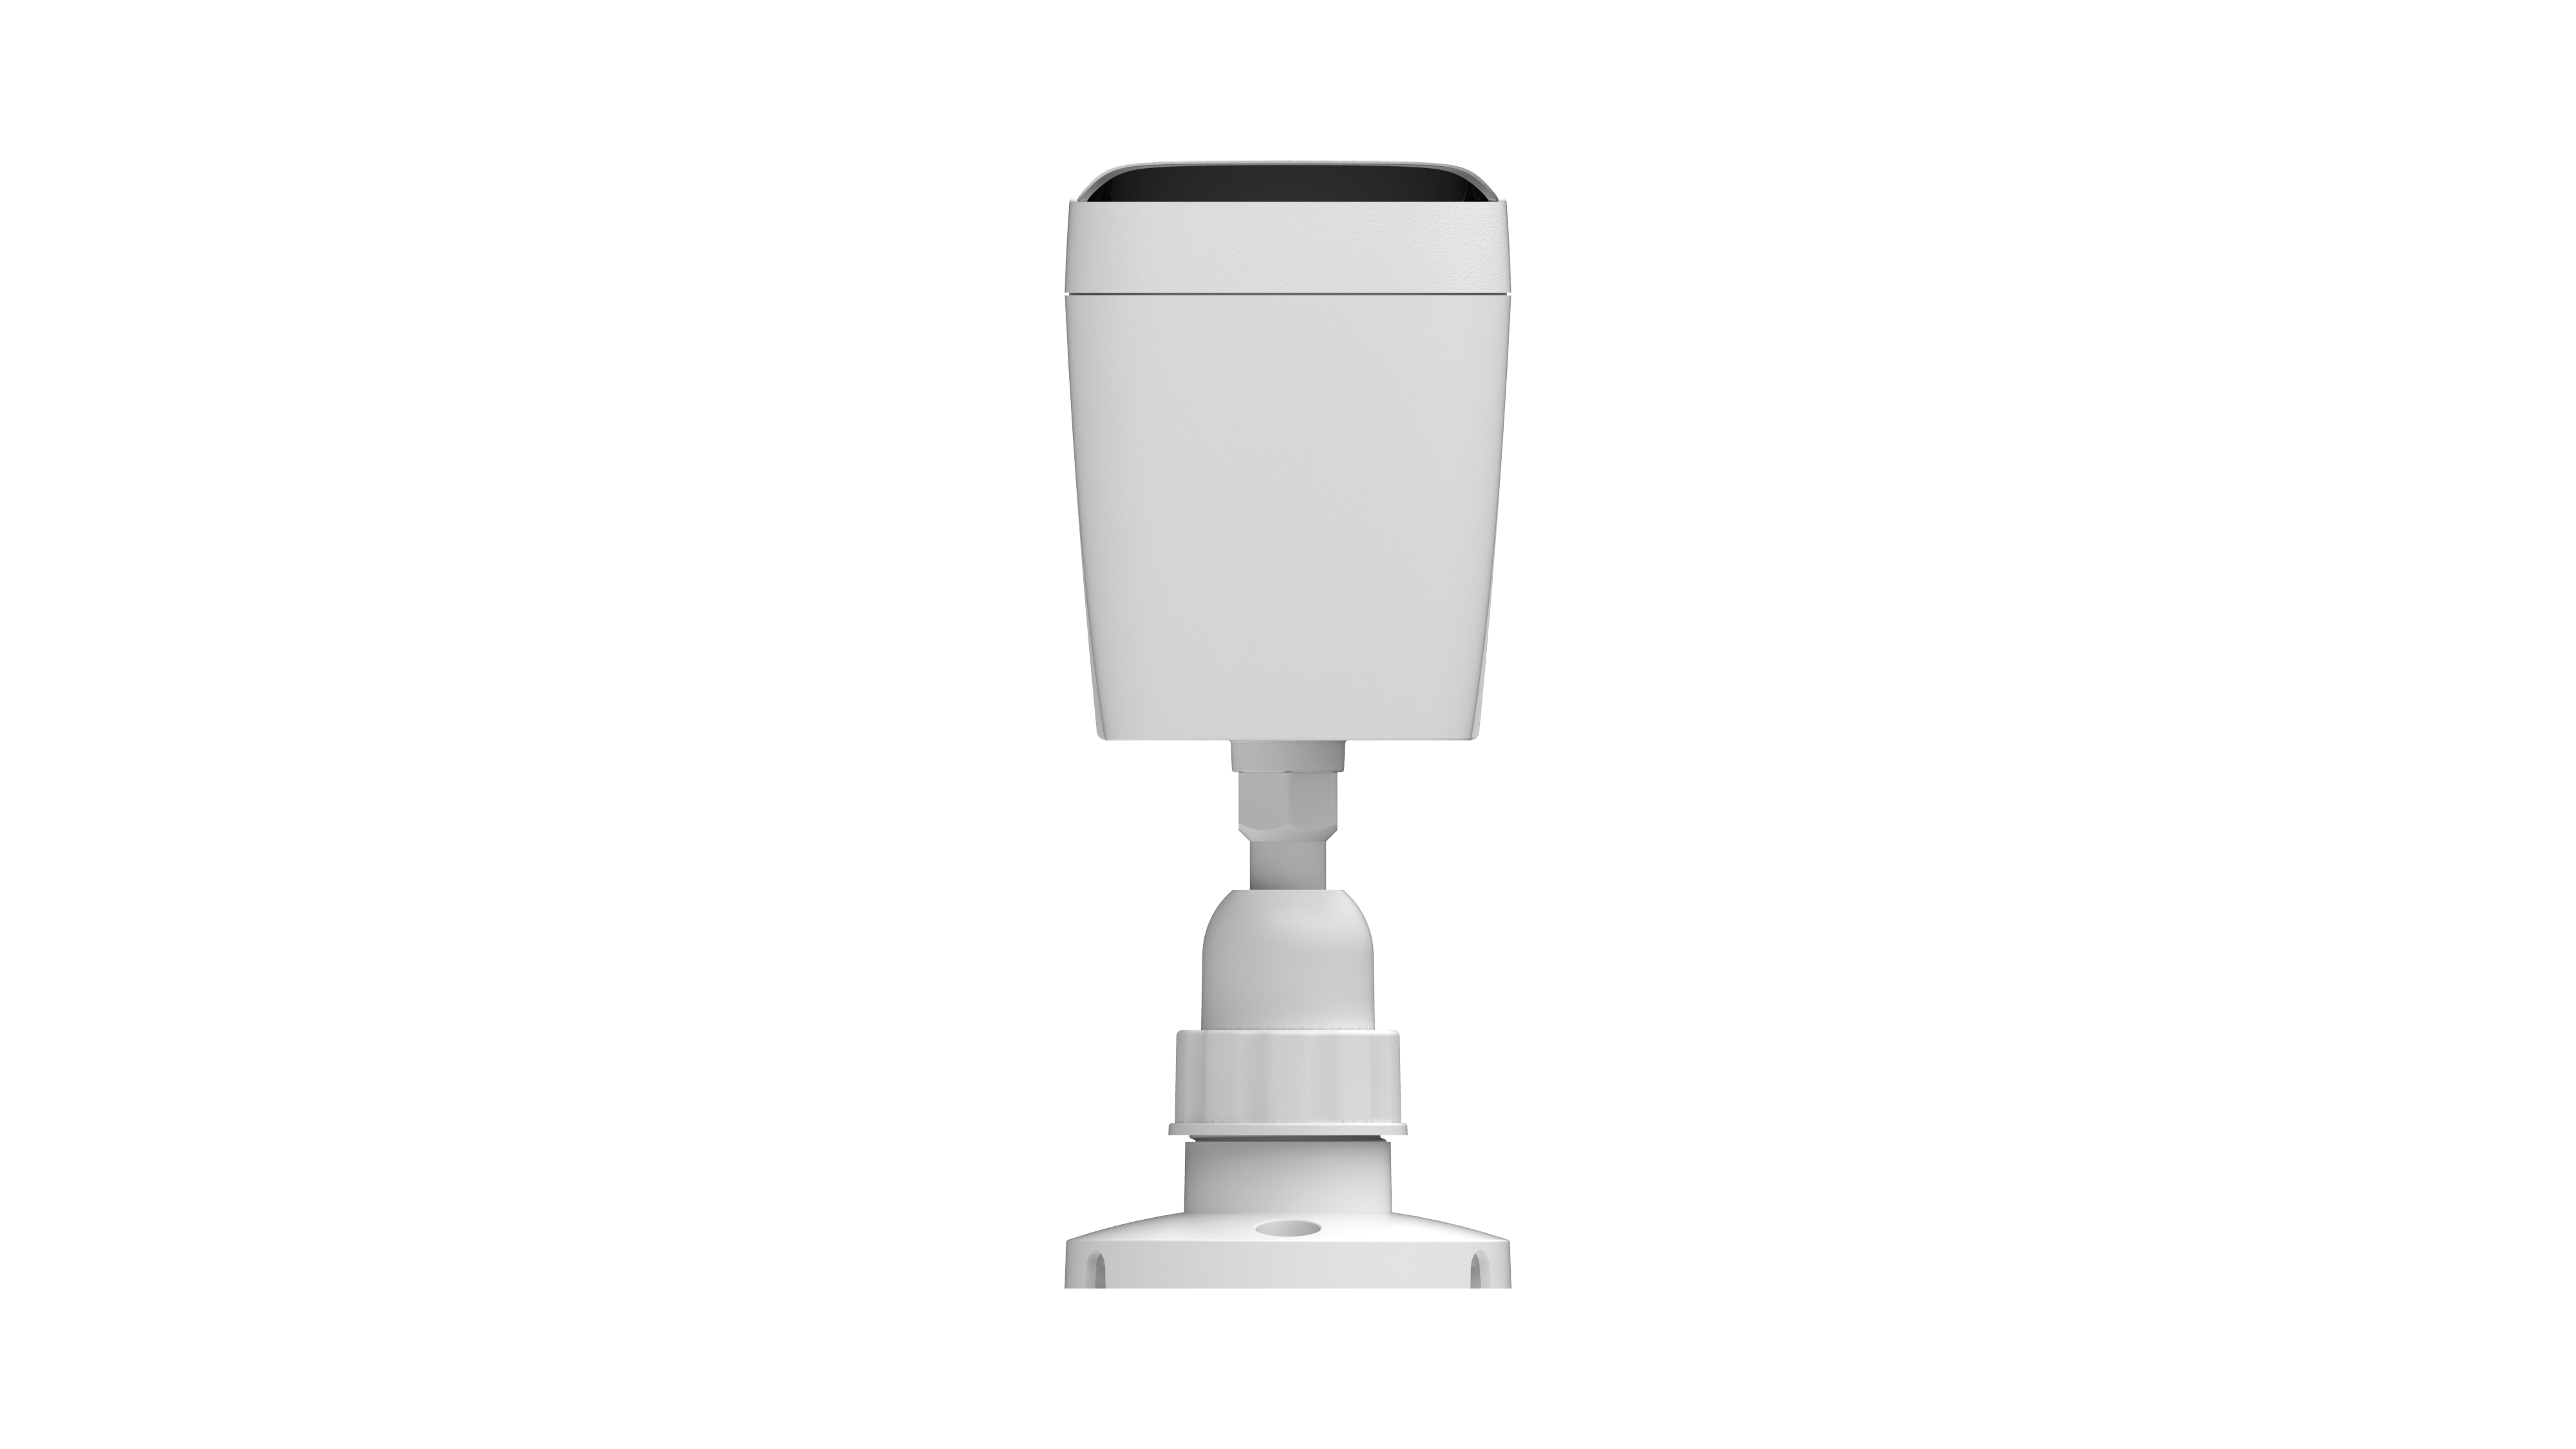 Детальное изображение товара "IP-видеокамера цилиндрическая уличная Atix AT-NC-2B4MP-2.8/M (3B)" из каталога оборудования для видеонаблюдения